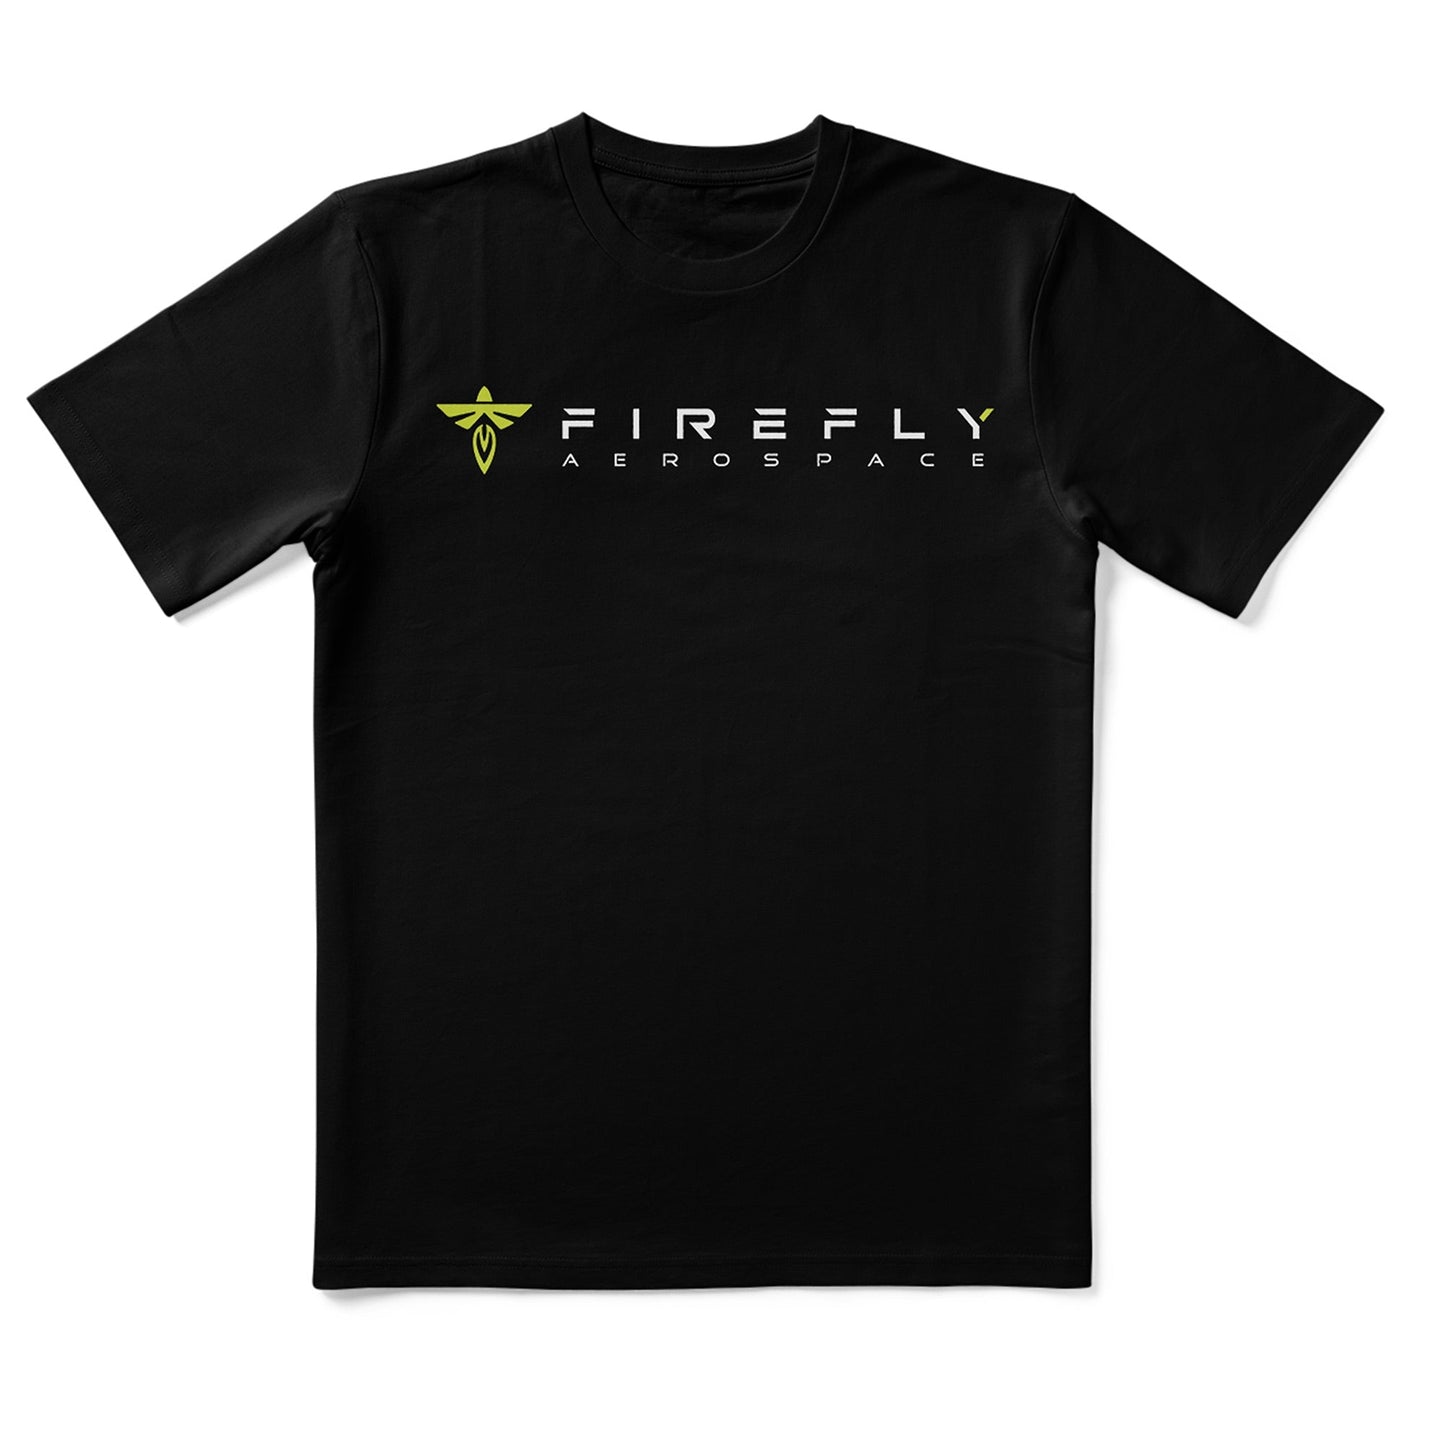 Firefly Miranda Engine T-Shirt